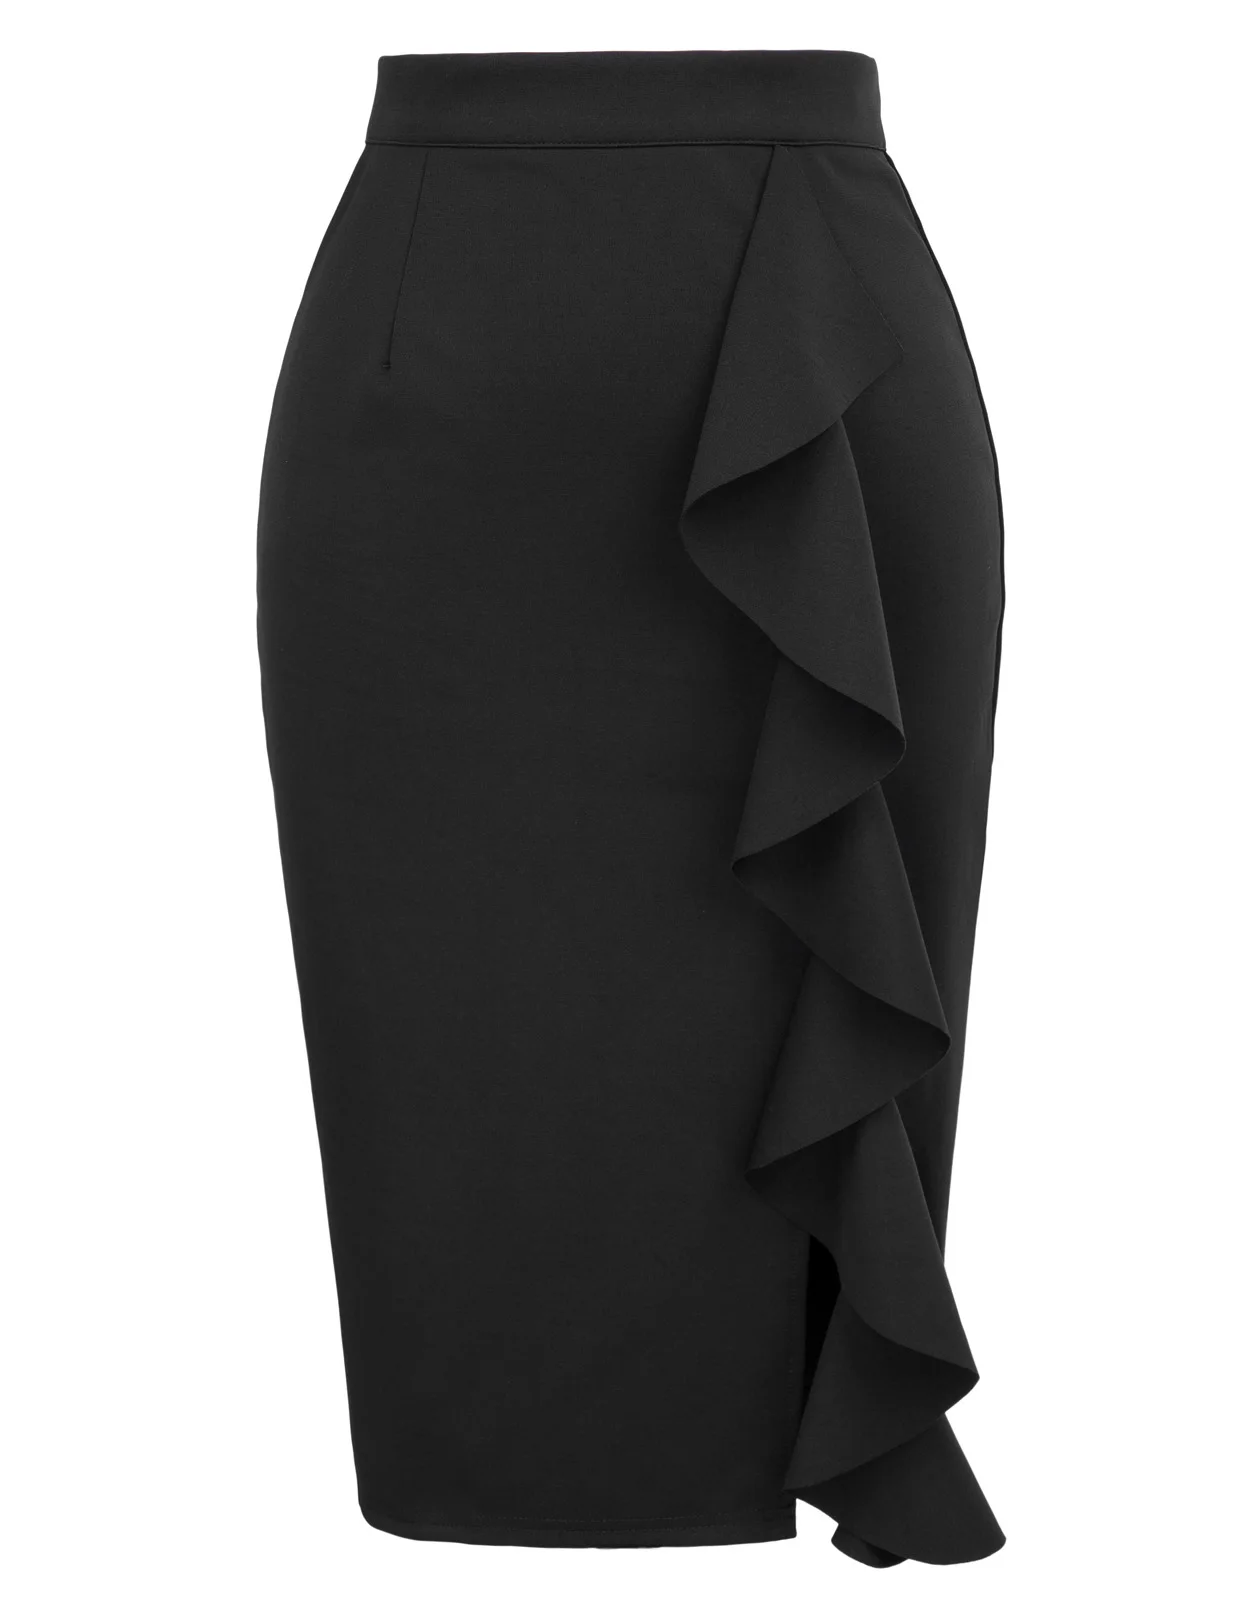 Сексуальная Женская юбка-карандаш, украшенная рюшами, в бедрах, Офисная Женская юбка, одежда для работы, облегающая, с разрезом сбоку, элегантная юбка, faldas mujer - Цвет: Black